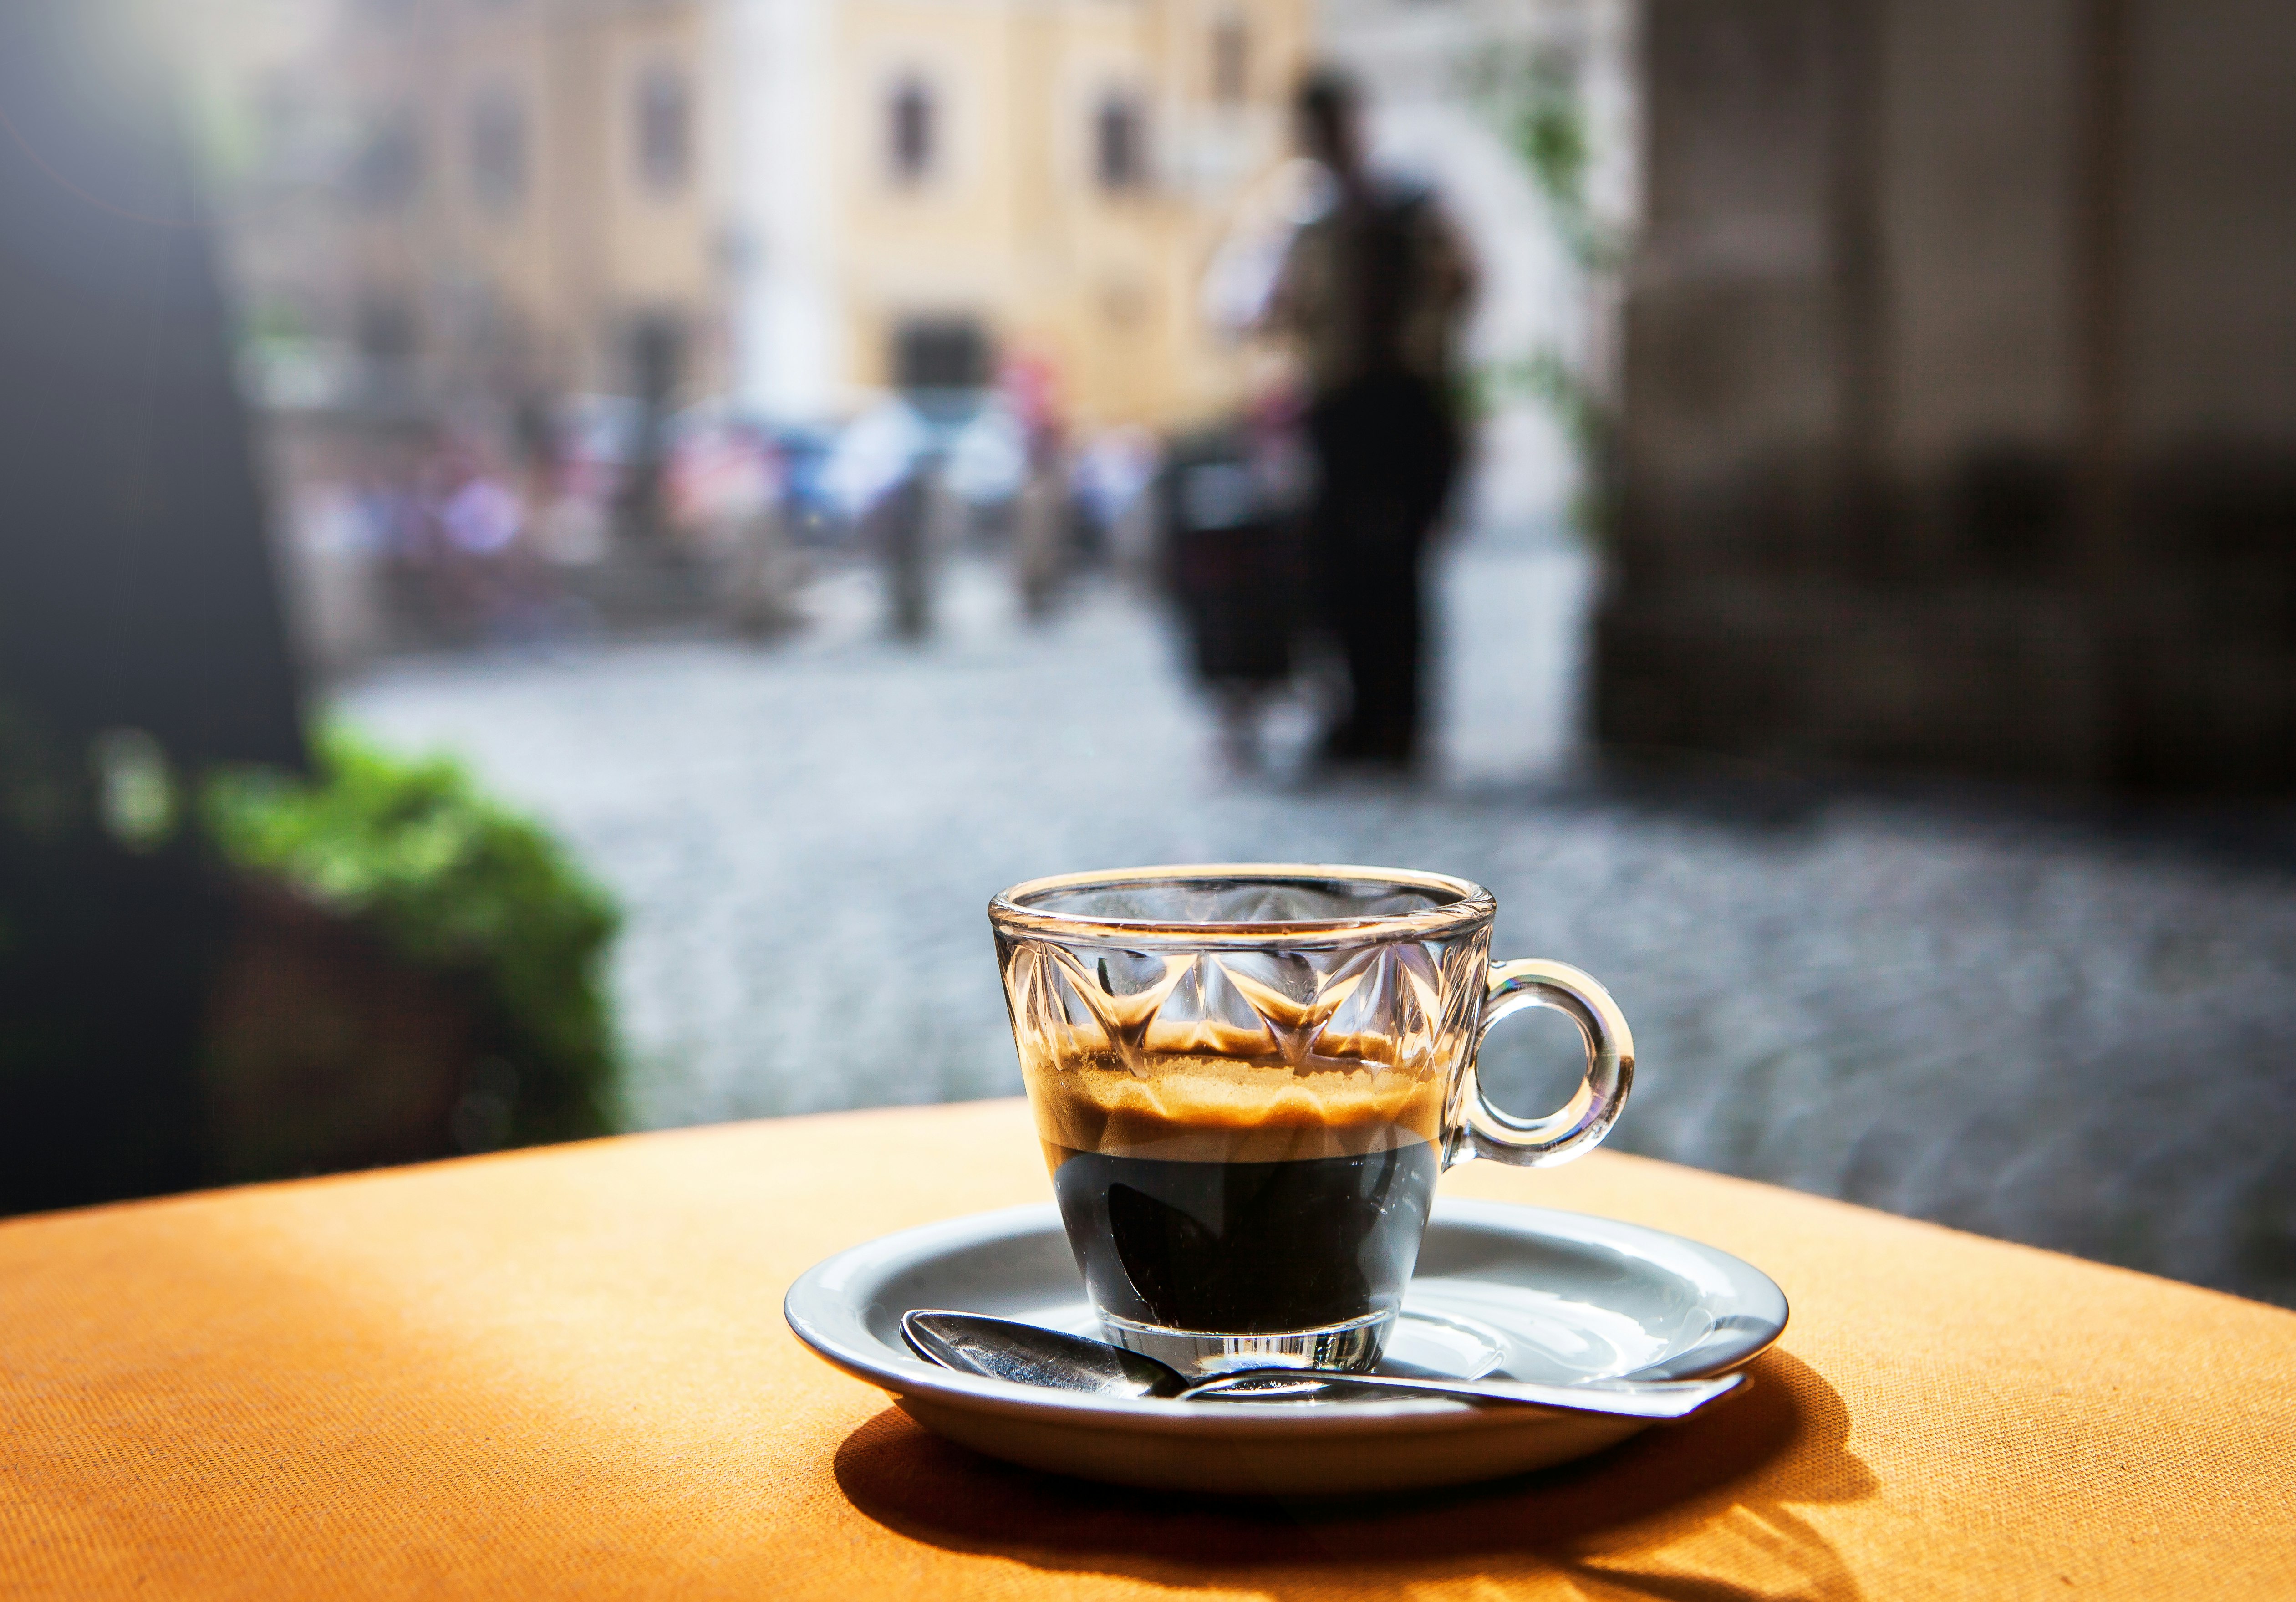 En espresso i en dekorativ glaskopp som sitter på ett fat på ett bord utanför.  Gatubilden i bakgrunden är i mjukt fokus.